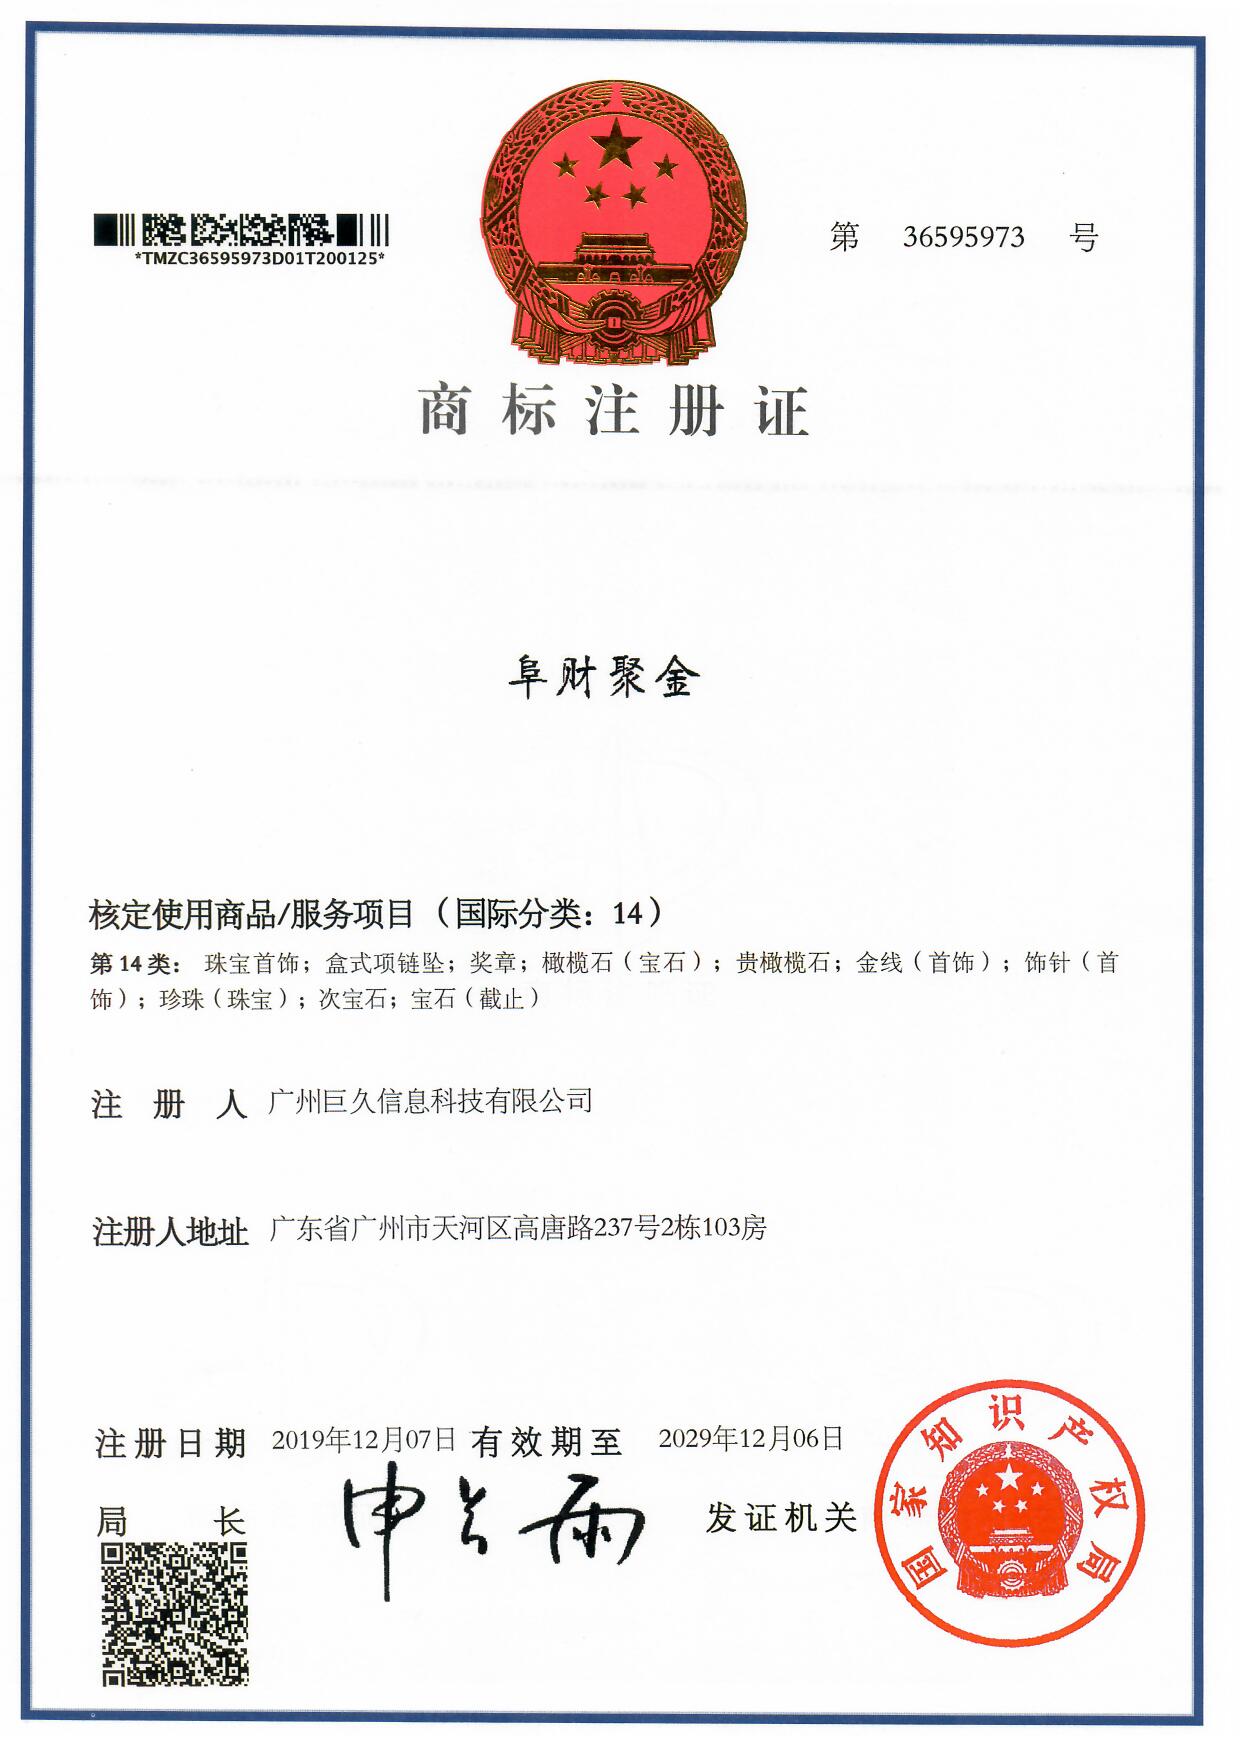 广州巨久信息科技有限公司商标证书36595973.jpg